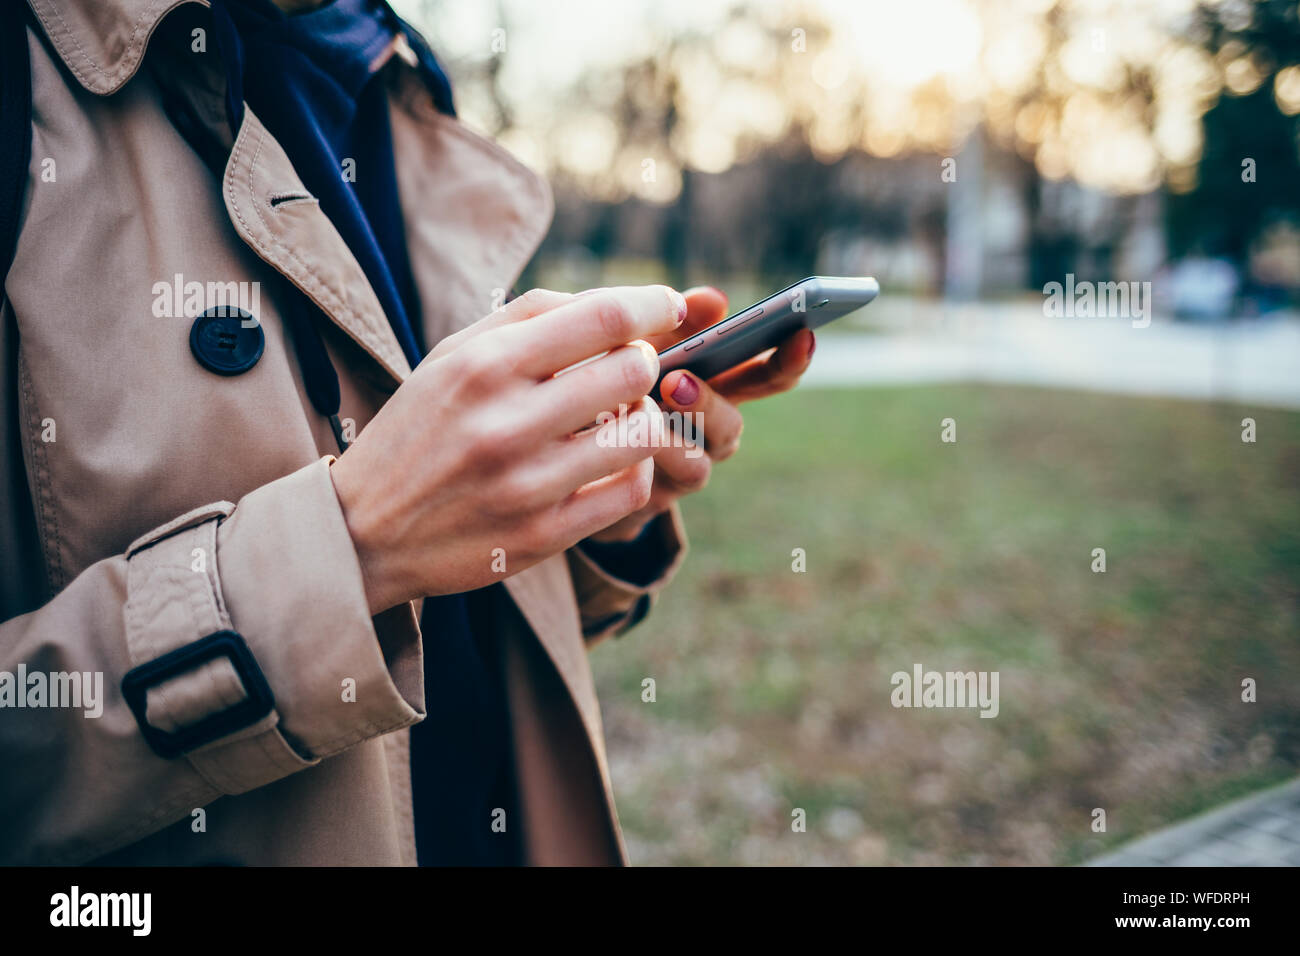 Femme dans un manteau beige est titulaire d'un téléphone mobile dans ses mains dans le parc Banque D'Images